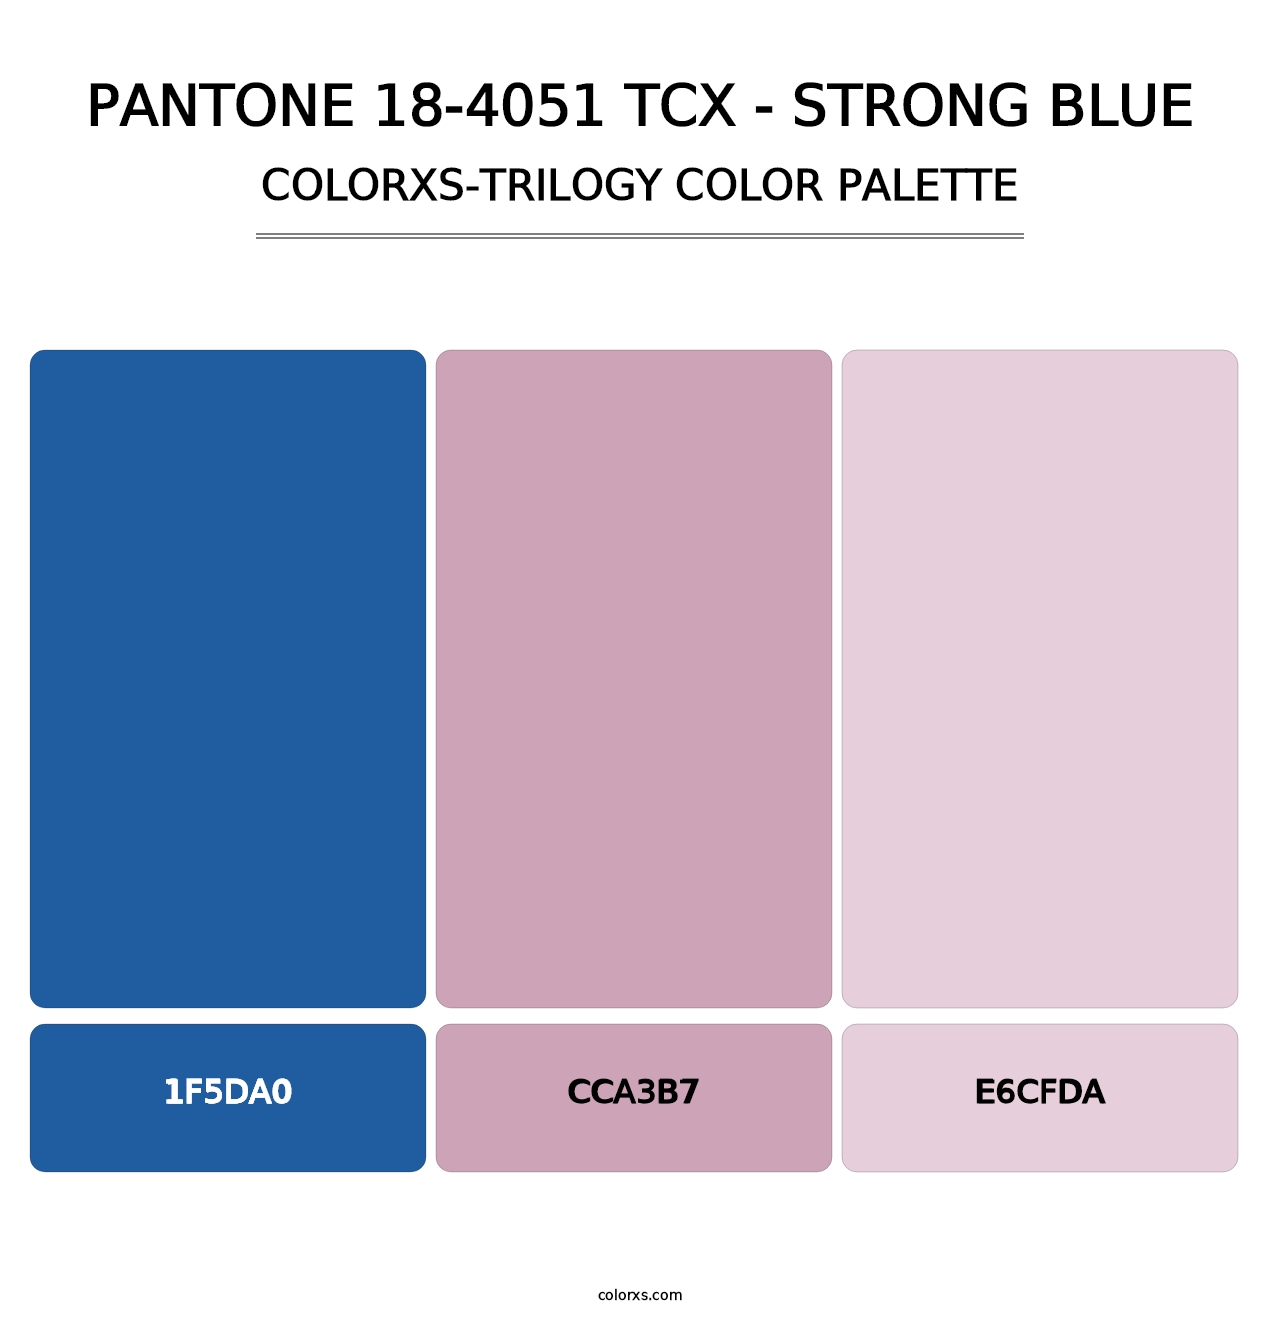 PANTONE 18-4051 TCX - Strong Blue - Colorxs Trilogy Palette